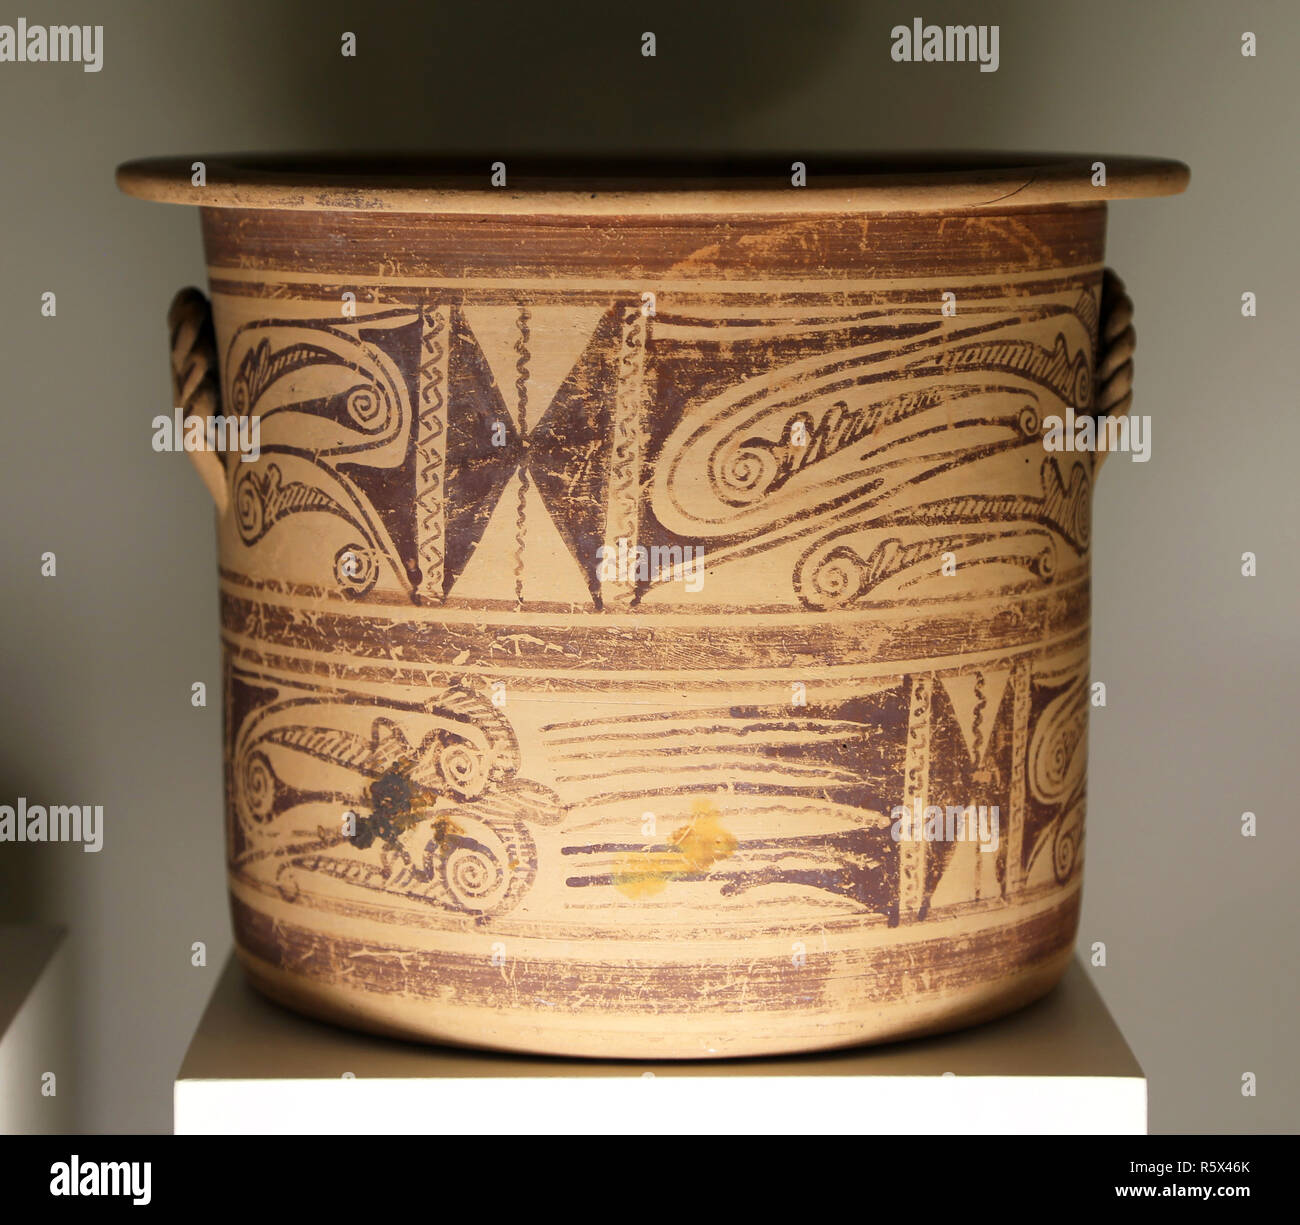 Iberischen Steinzeug vase Kalathos (3. Jahrhundert v. Chr.) Rad - Keramik, Iberische Kultur, süd-östlich von der Iberischen Halbinsel, Spanien. Stockfoto